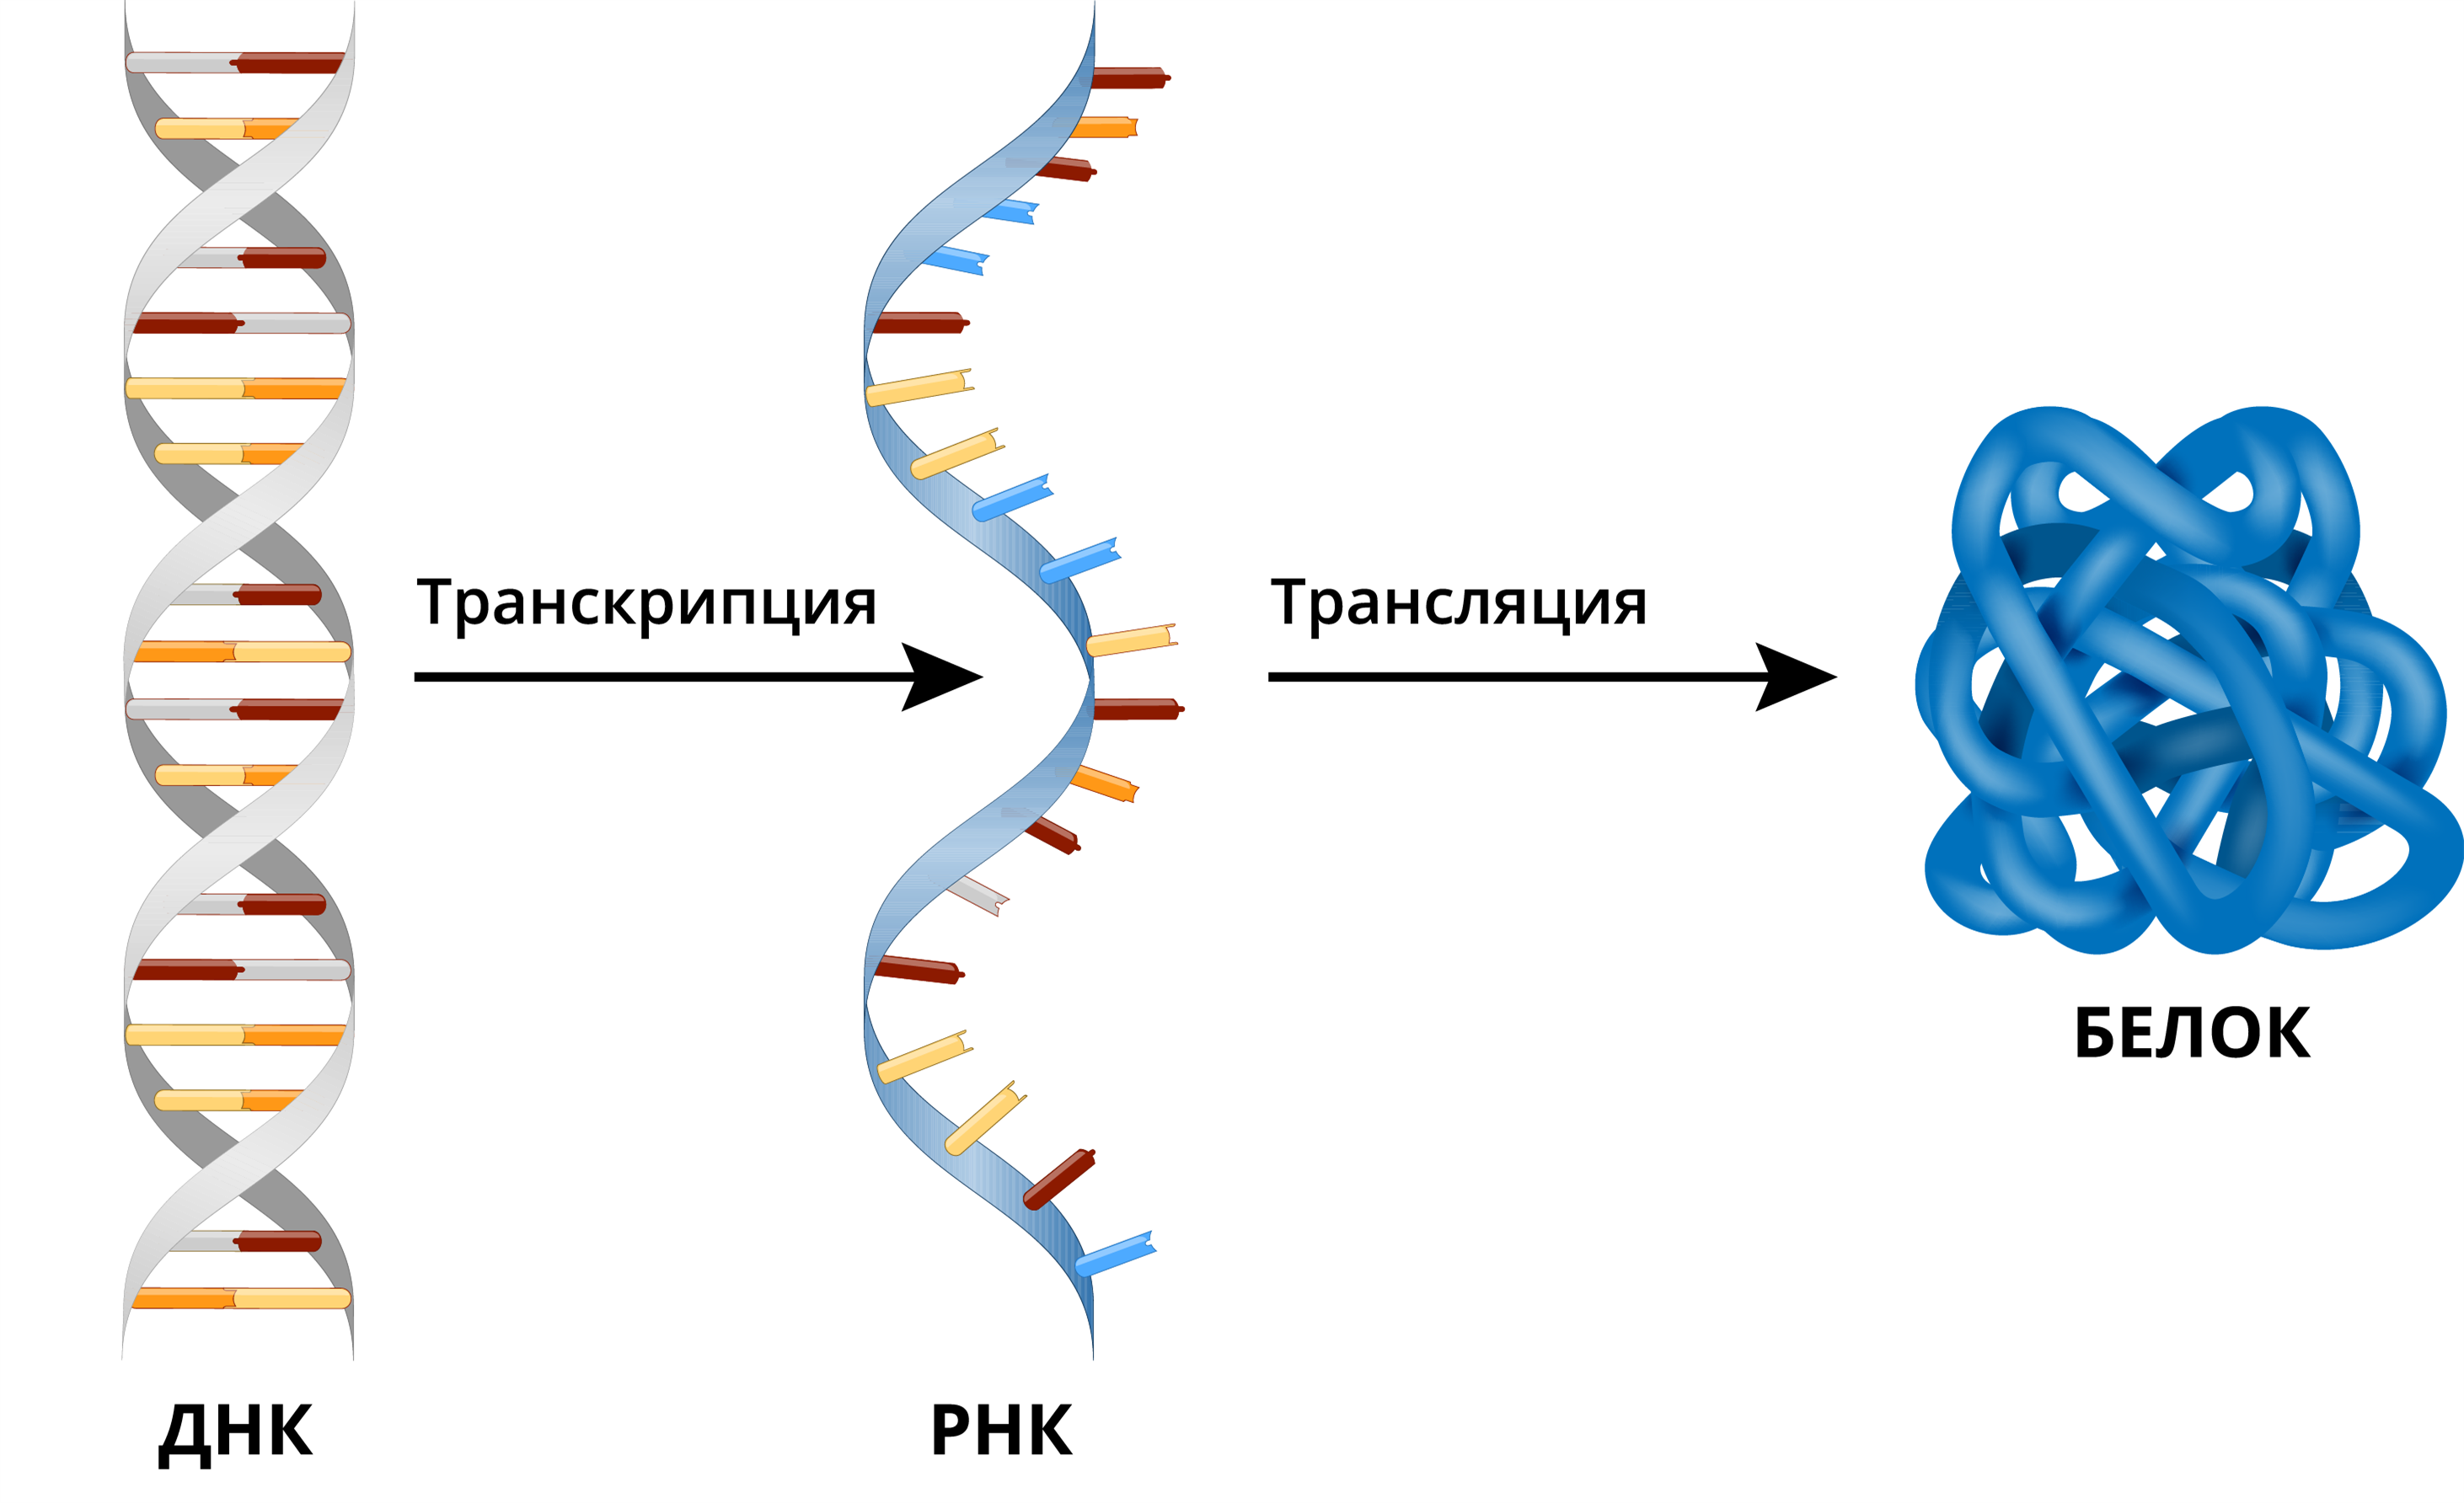 Днк в соединении с белком. ДНК РНК белок схема. ДНК ИРНК белок. Транскрипция и трансляция ДНК. ДНК транскрипция РНК трансляция белок.